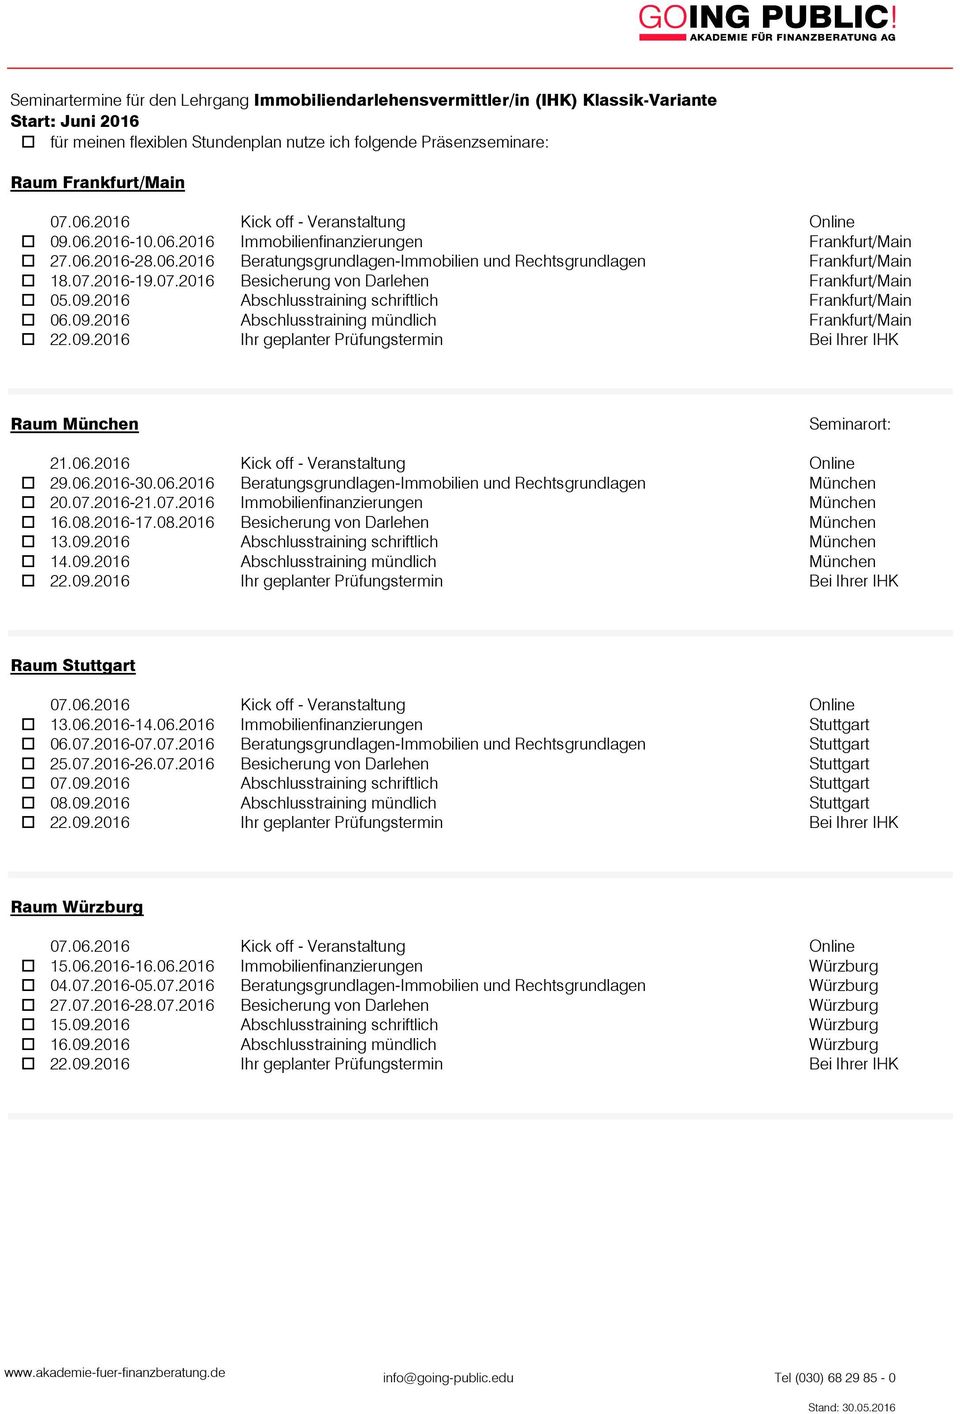 06.2016-30.06.2016 Beratungsgrundlagen-Immobilien und Rechtsgrundlagen München o 20.07.2016-21.07.2016 Immobilienfinanzierungen München o 16.08.2016-17.08.2016 Besicherung von Darlehen München o 13.